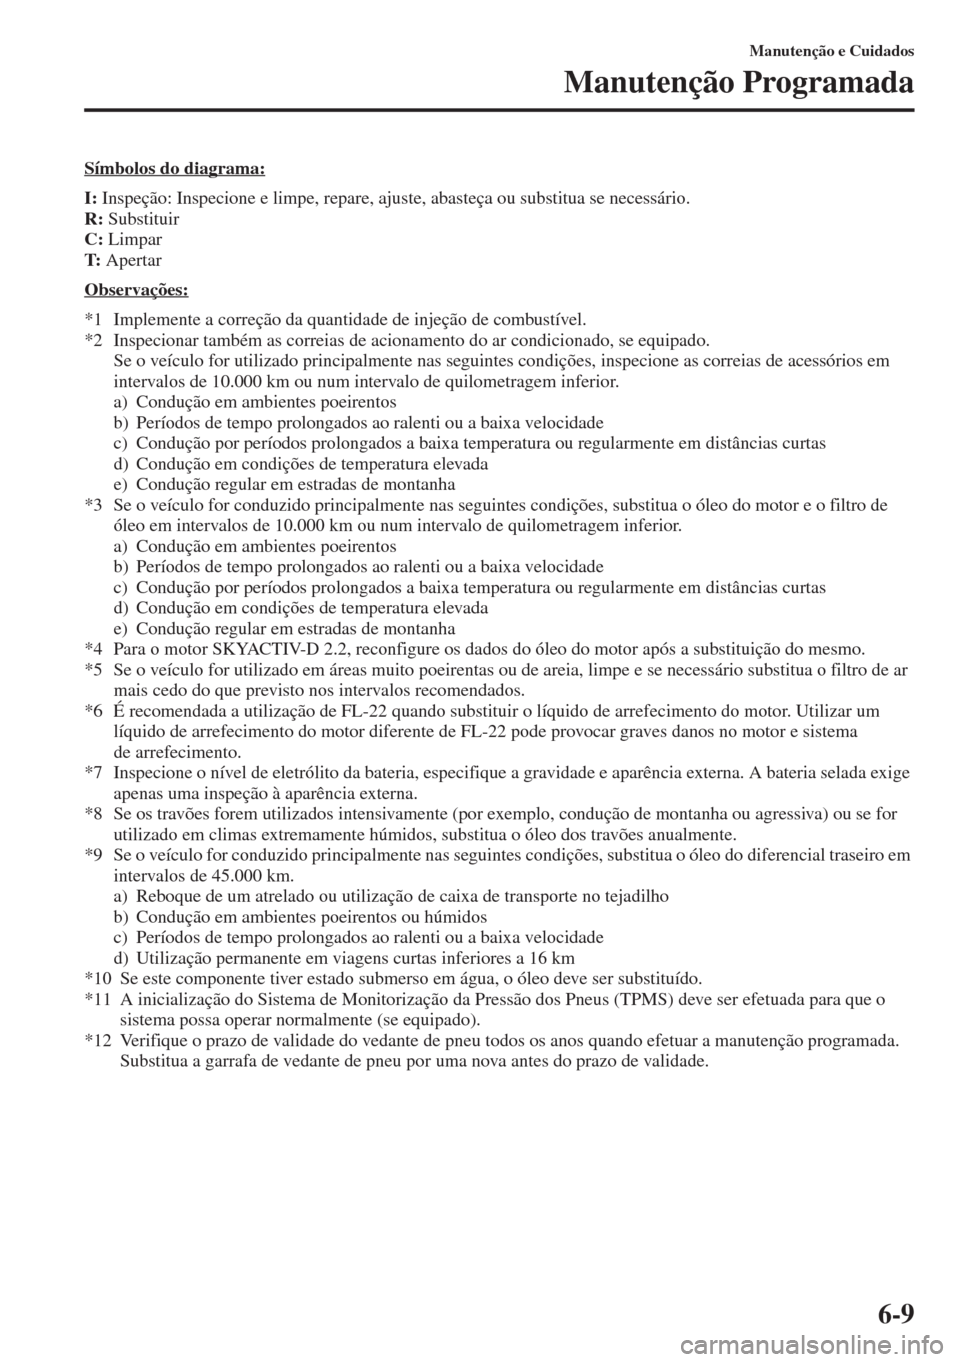 MAZDA MODEL CX-5 2015  Manual do proprietário (in Portuguese) 6-9
Manutenção e Cuidados
Manutenção Programada
Símbolos do diagrama:
I: Inspeção: Inspecione e limpe, repare, ajuste, abasteça ou substitua se necessário.
R: Substituir
C: Limpar
T: Apertar
